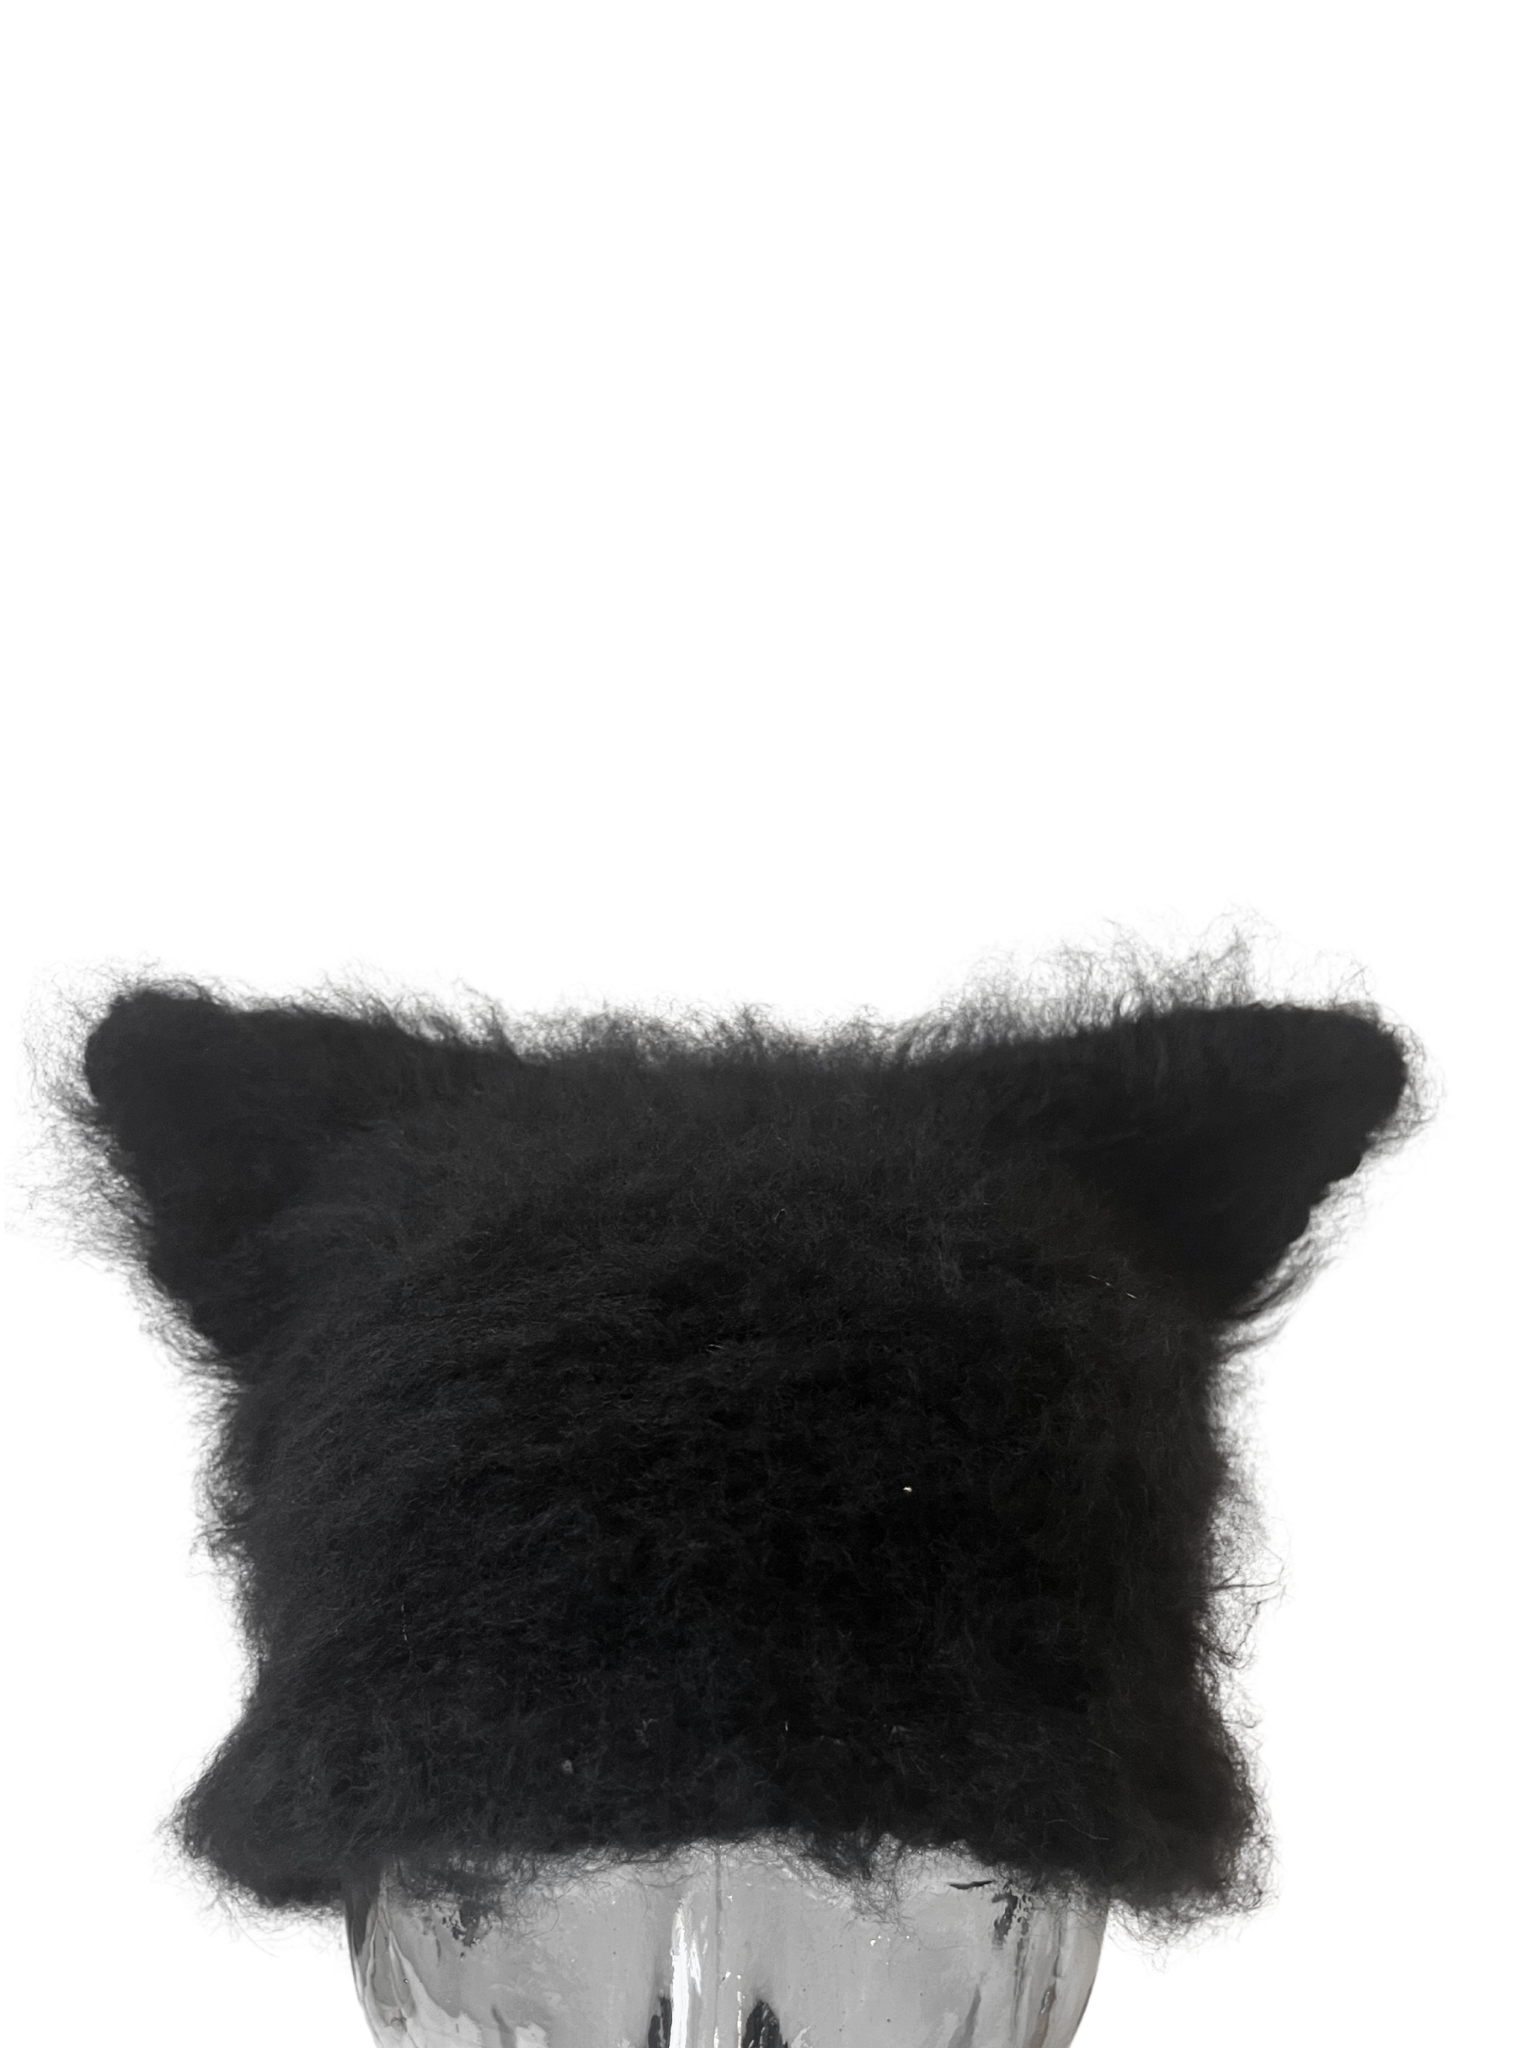 Wool cat beanie